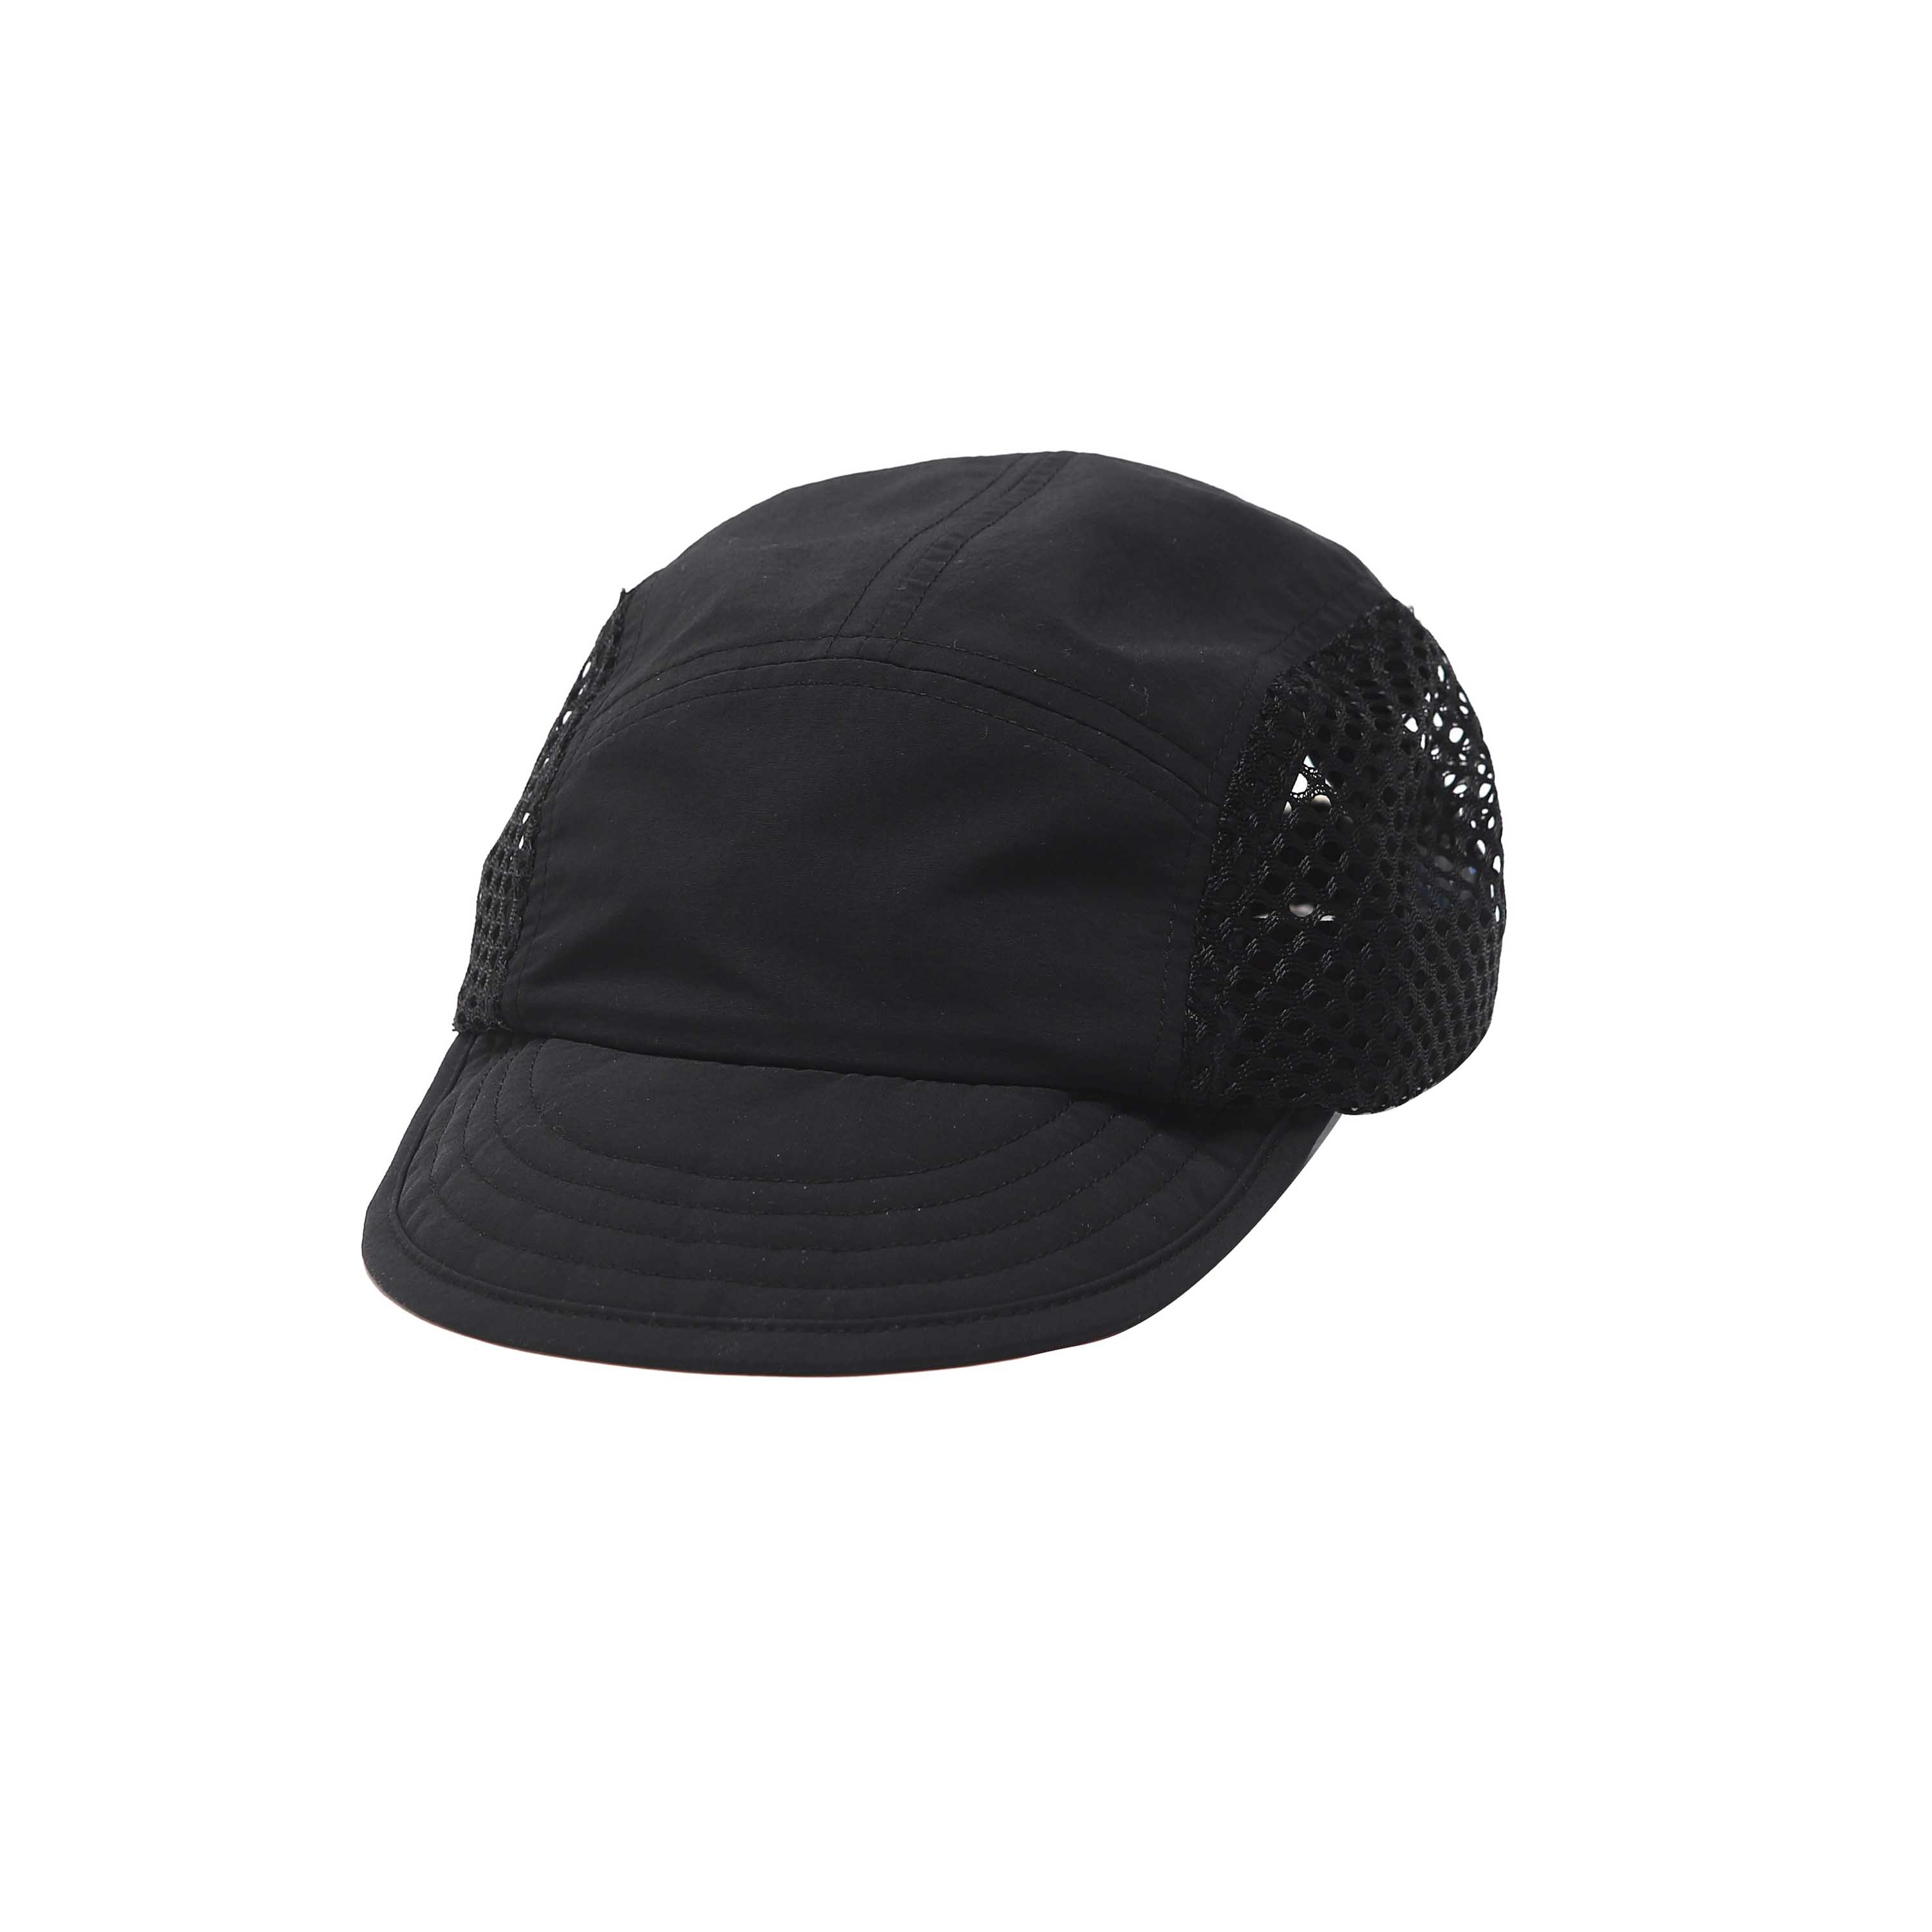 MESH CAP - BLACK